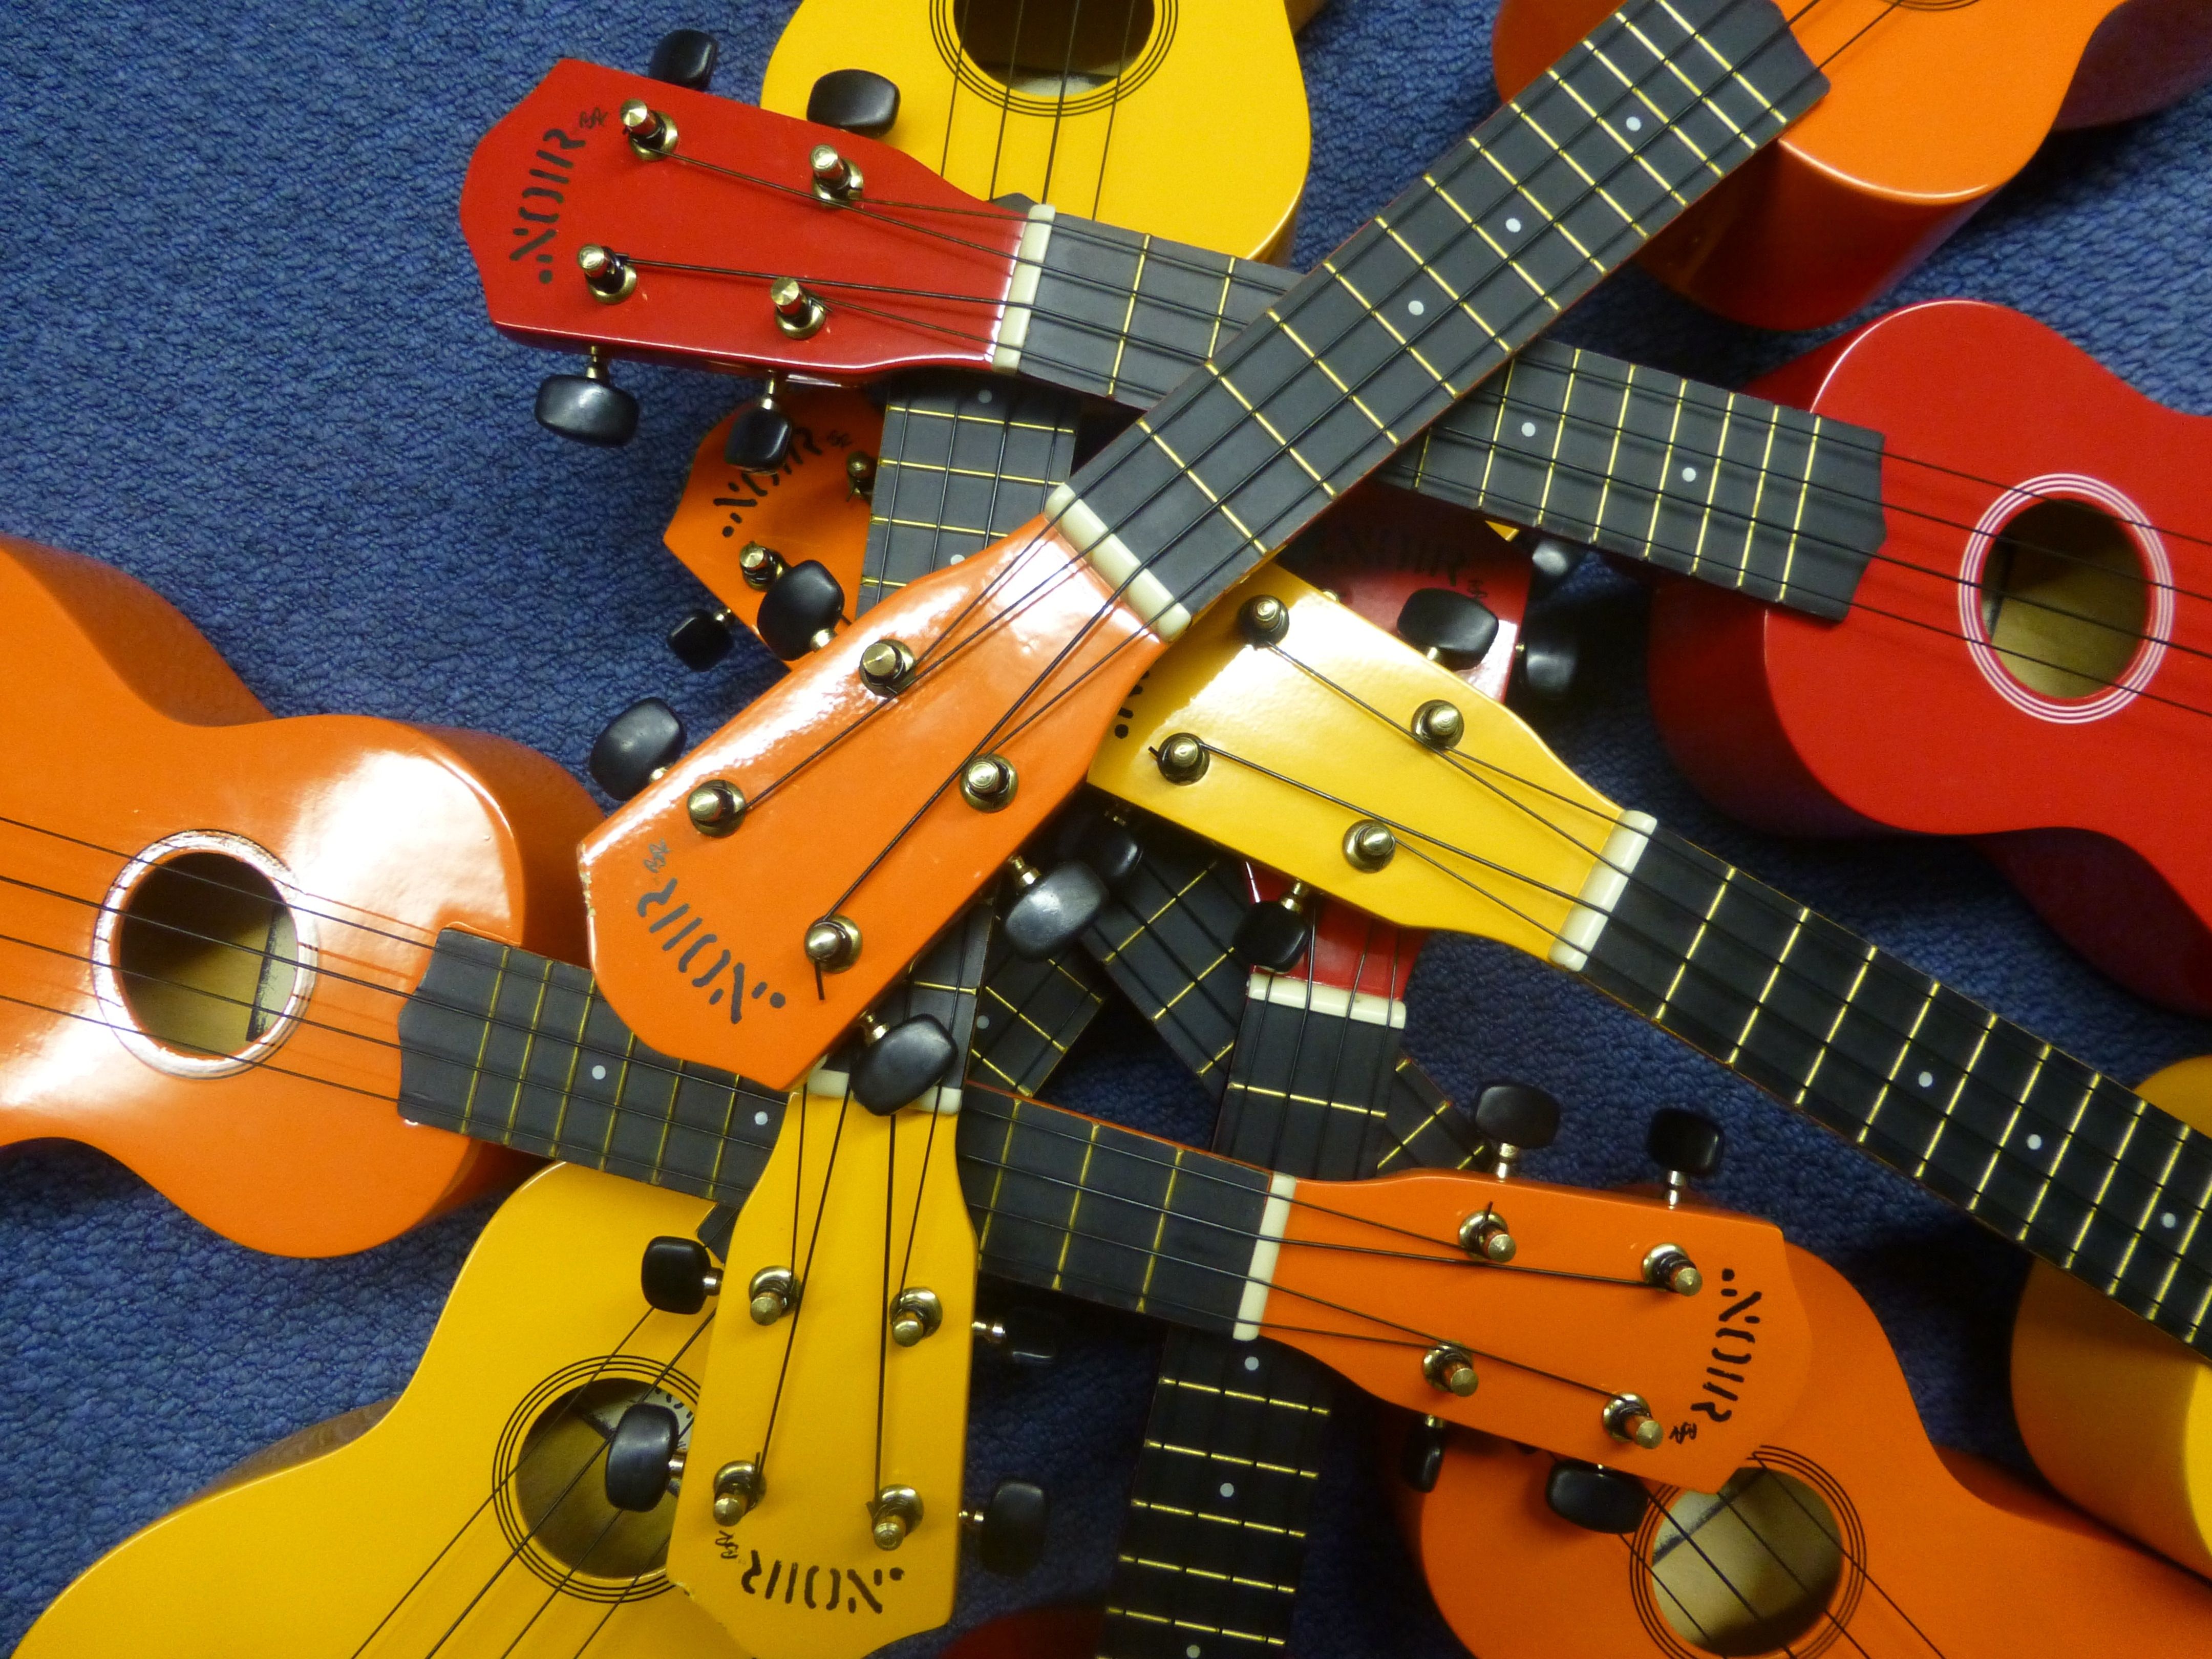 ukulele lot free image